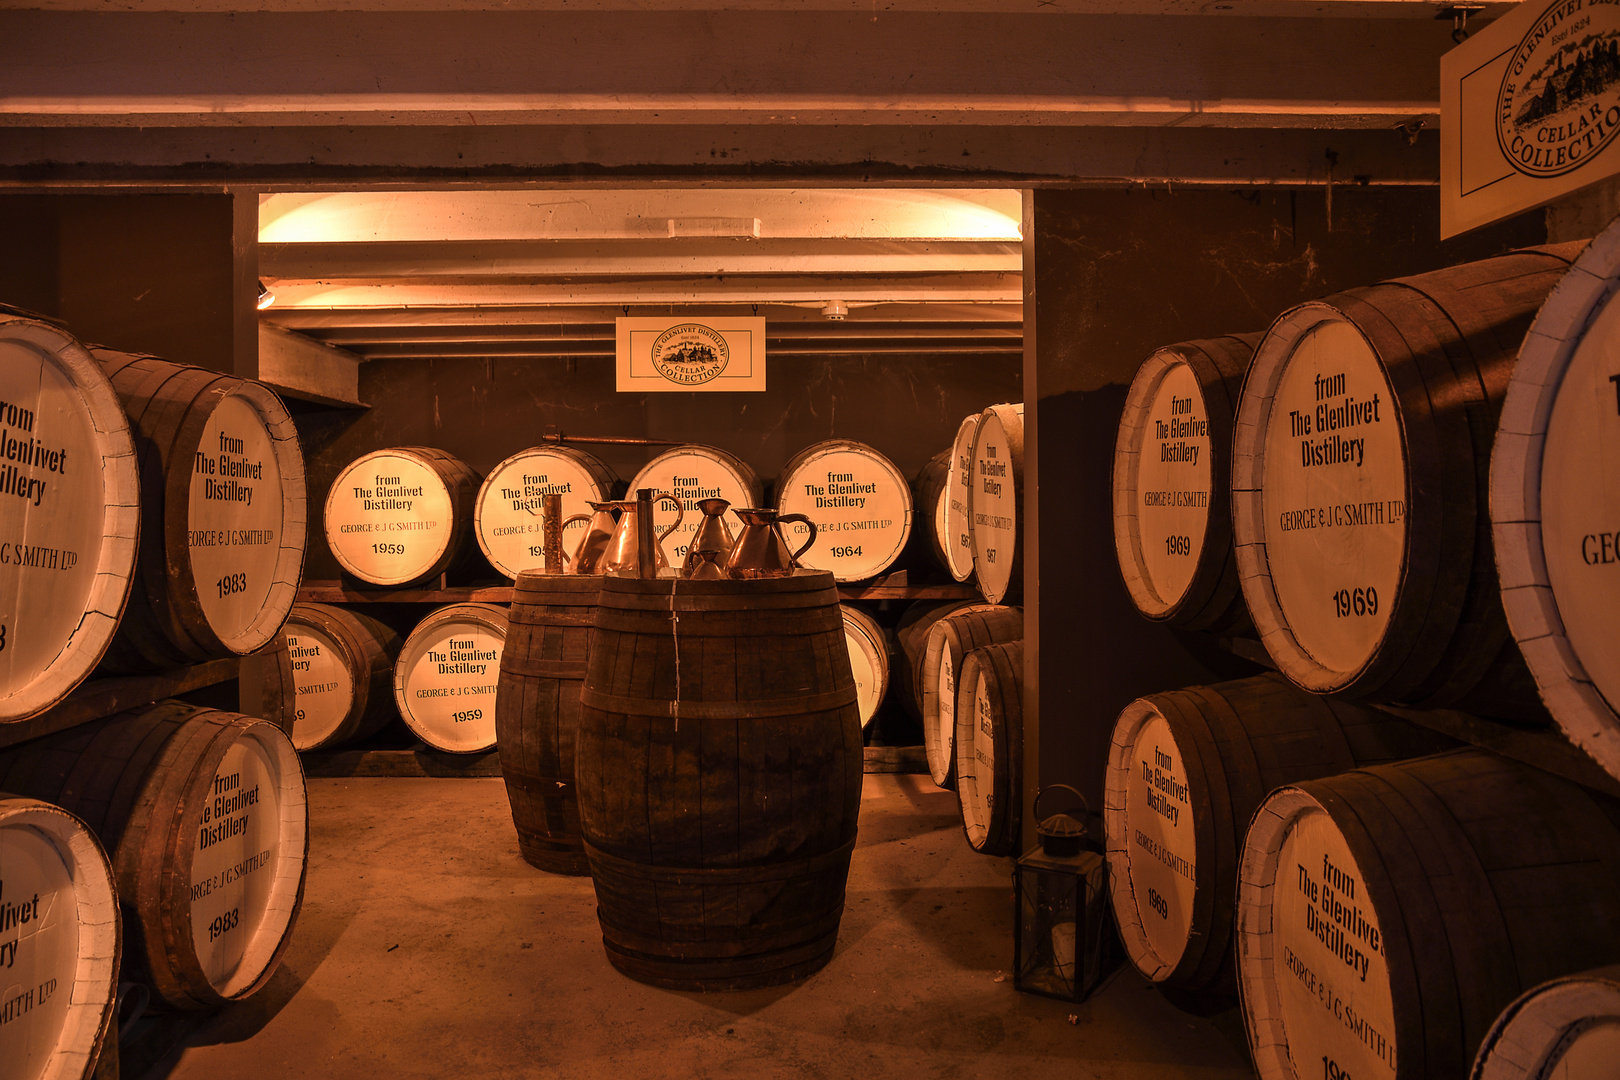 Inside The Glenlivet Distillery